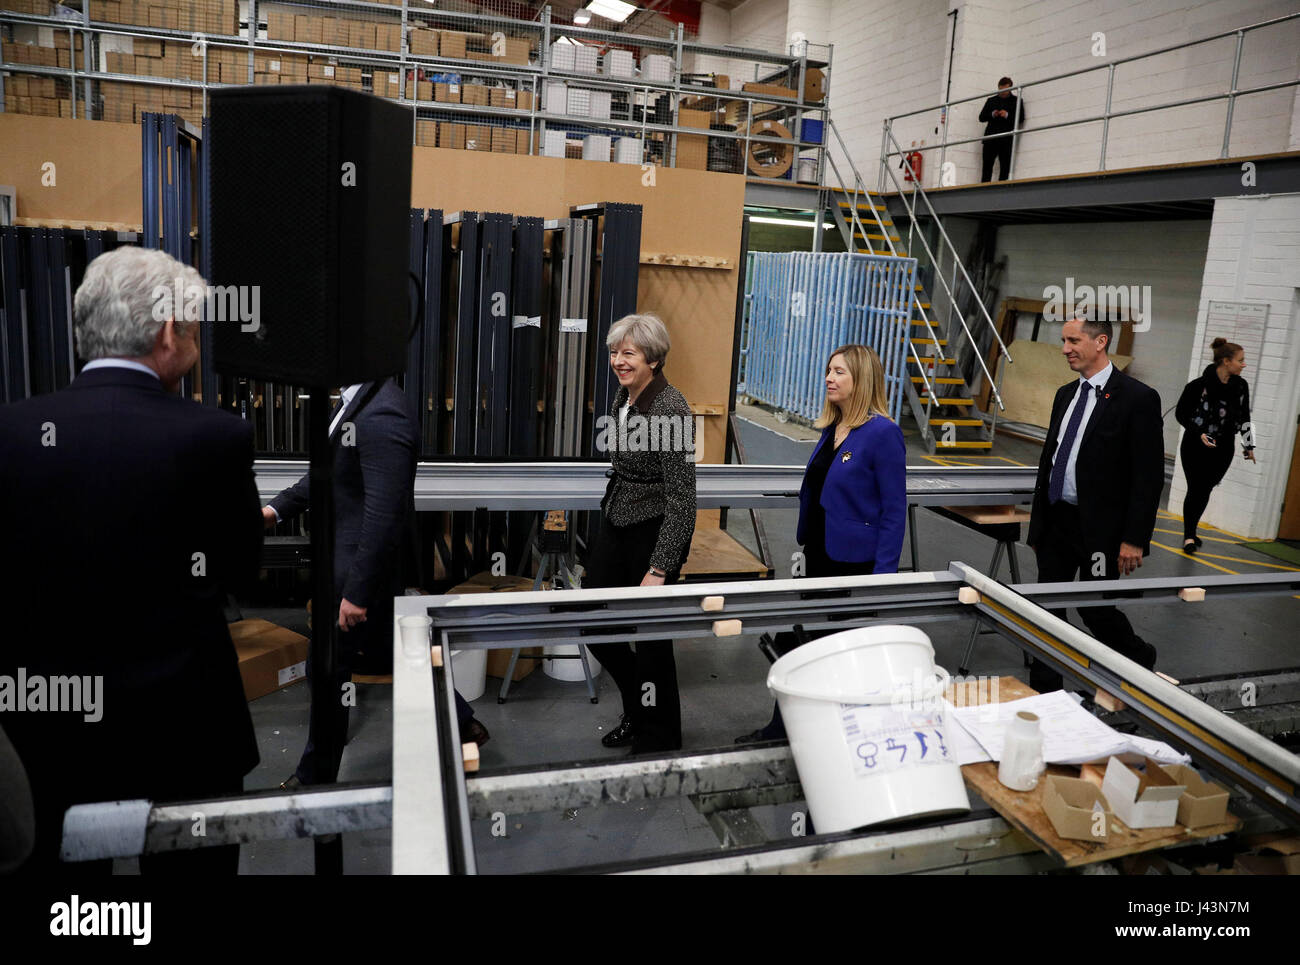 Premier ministre Theresa mai au cours d'une visite de campagne d'exprimer les deux portes pliantes, une entreprise familiale à Leeds. Banque D'Images